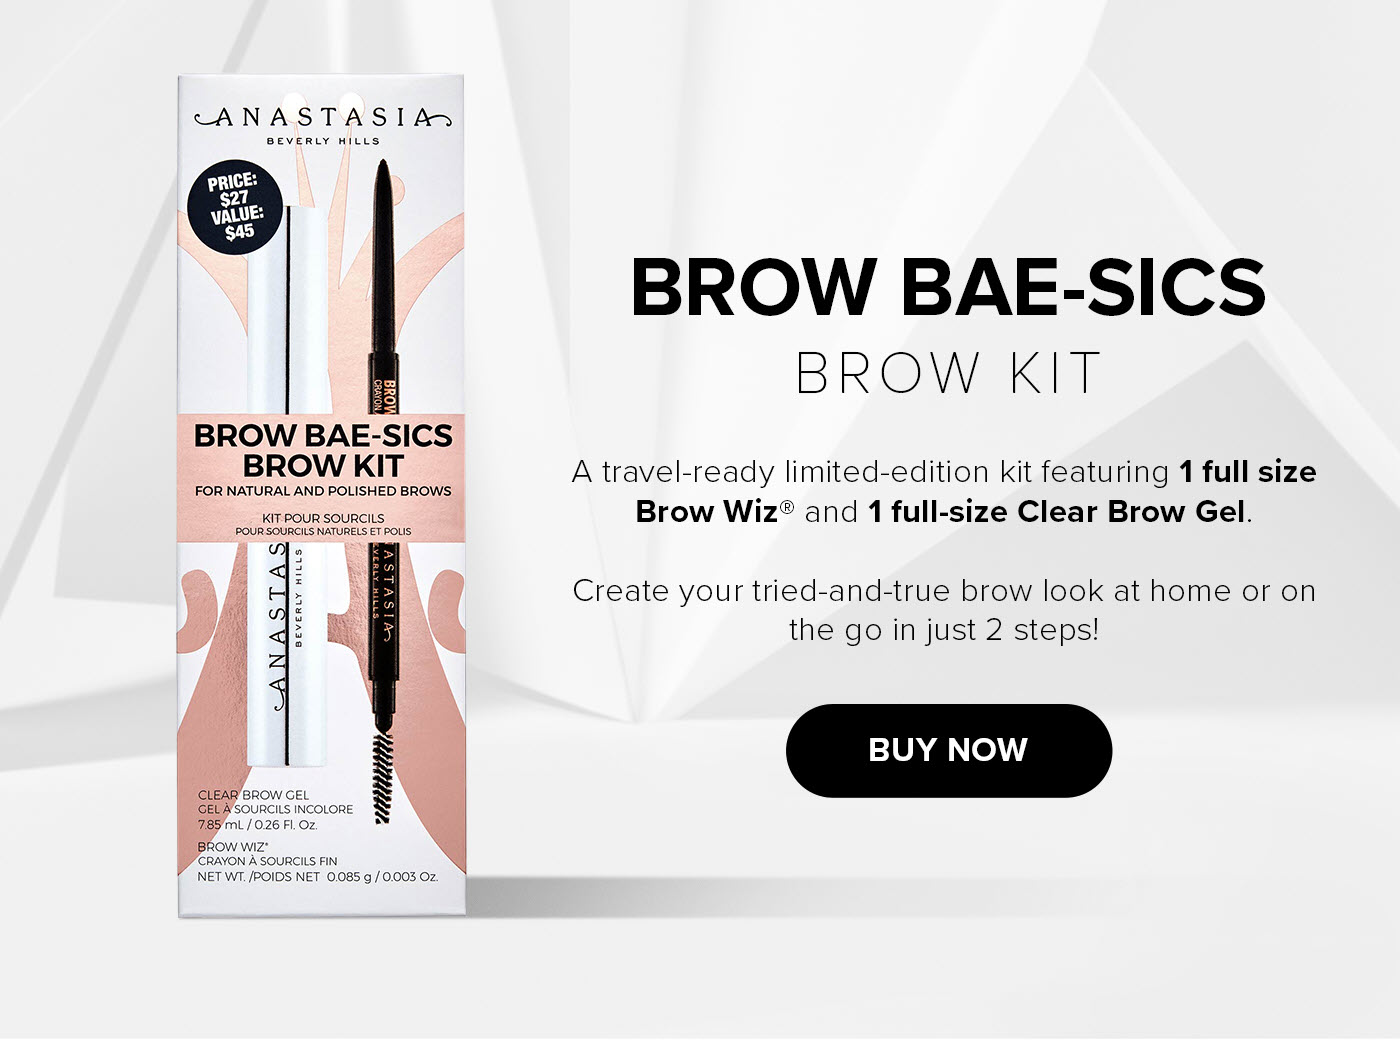 Brow Bae-sics Brow Kit - Buy Now